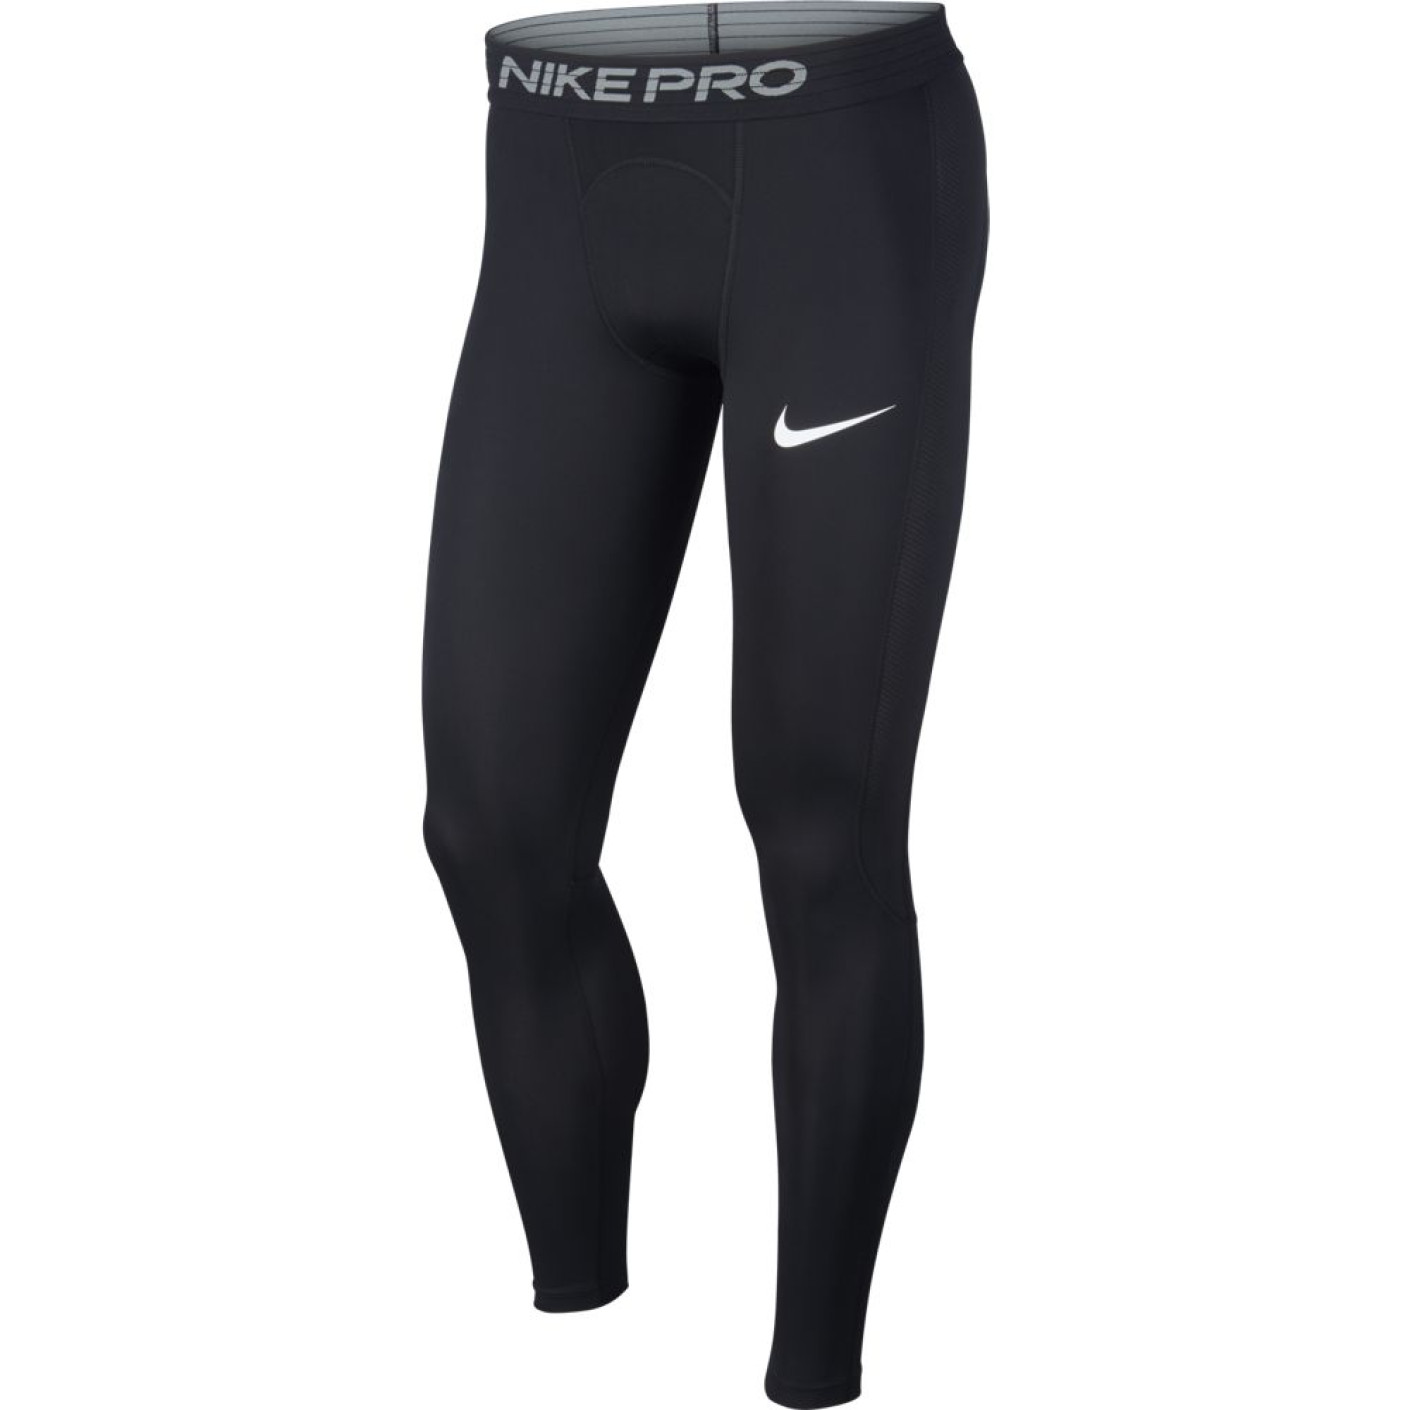 Nike Pro Tight Legging Zwart Wit